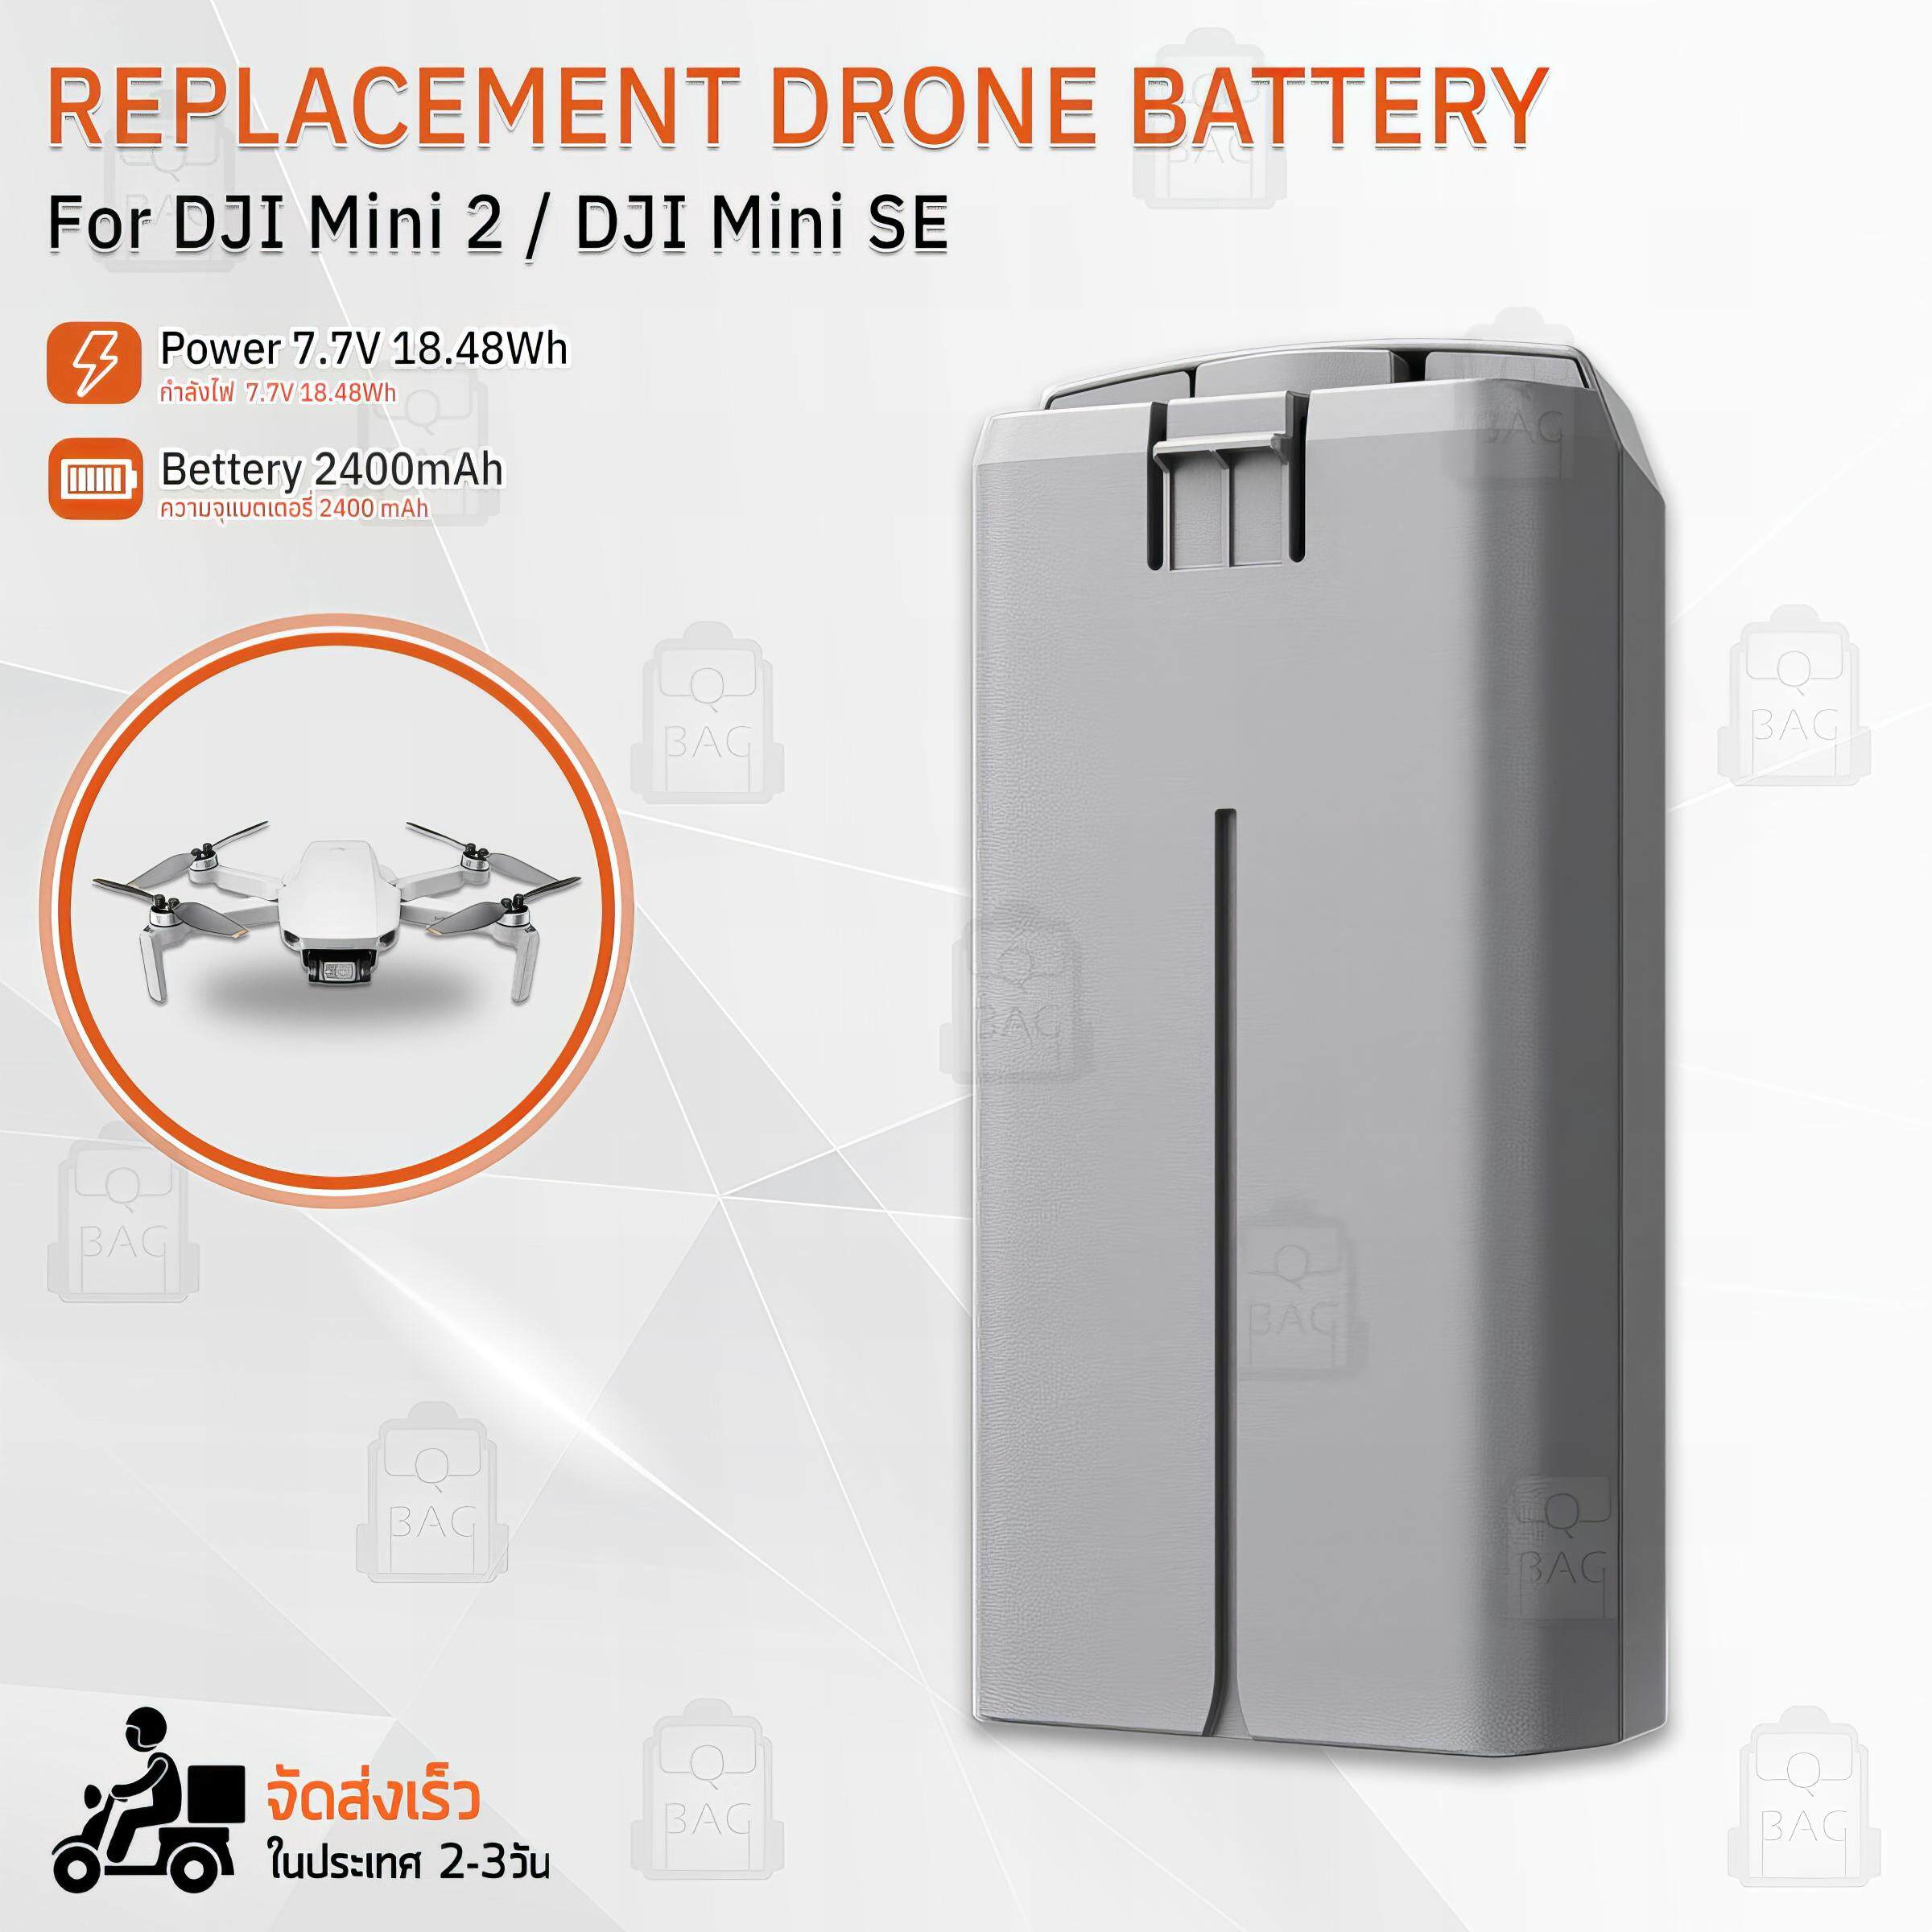 2400mAh 7.7V 18.48WH battery suitable for DJI Mavic MINI 2 drone